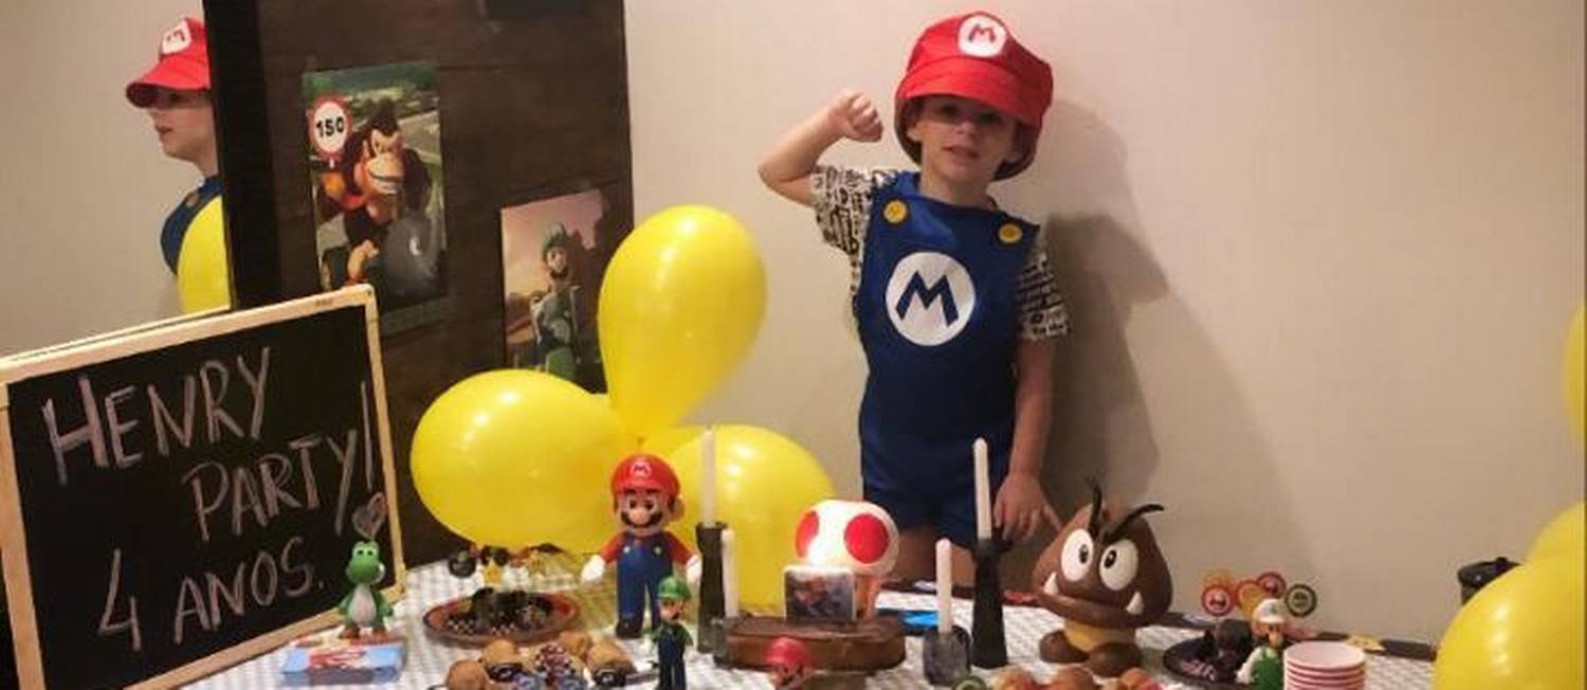 Henry em sua última festa de aniversário, de quatro anos: pai do menino compartilhou foto nas redes Foto: Arquivo pessoal